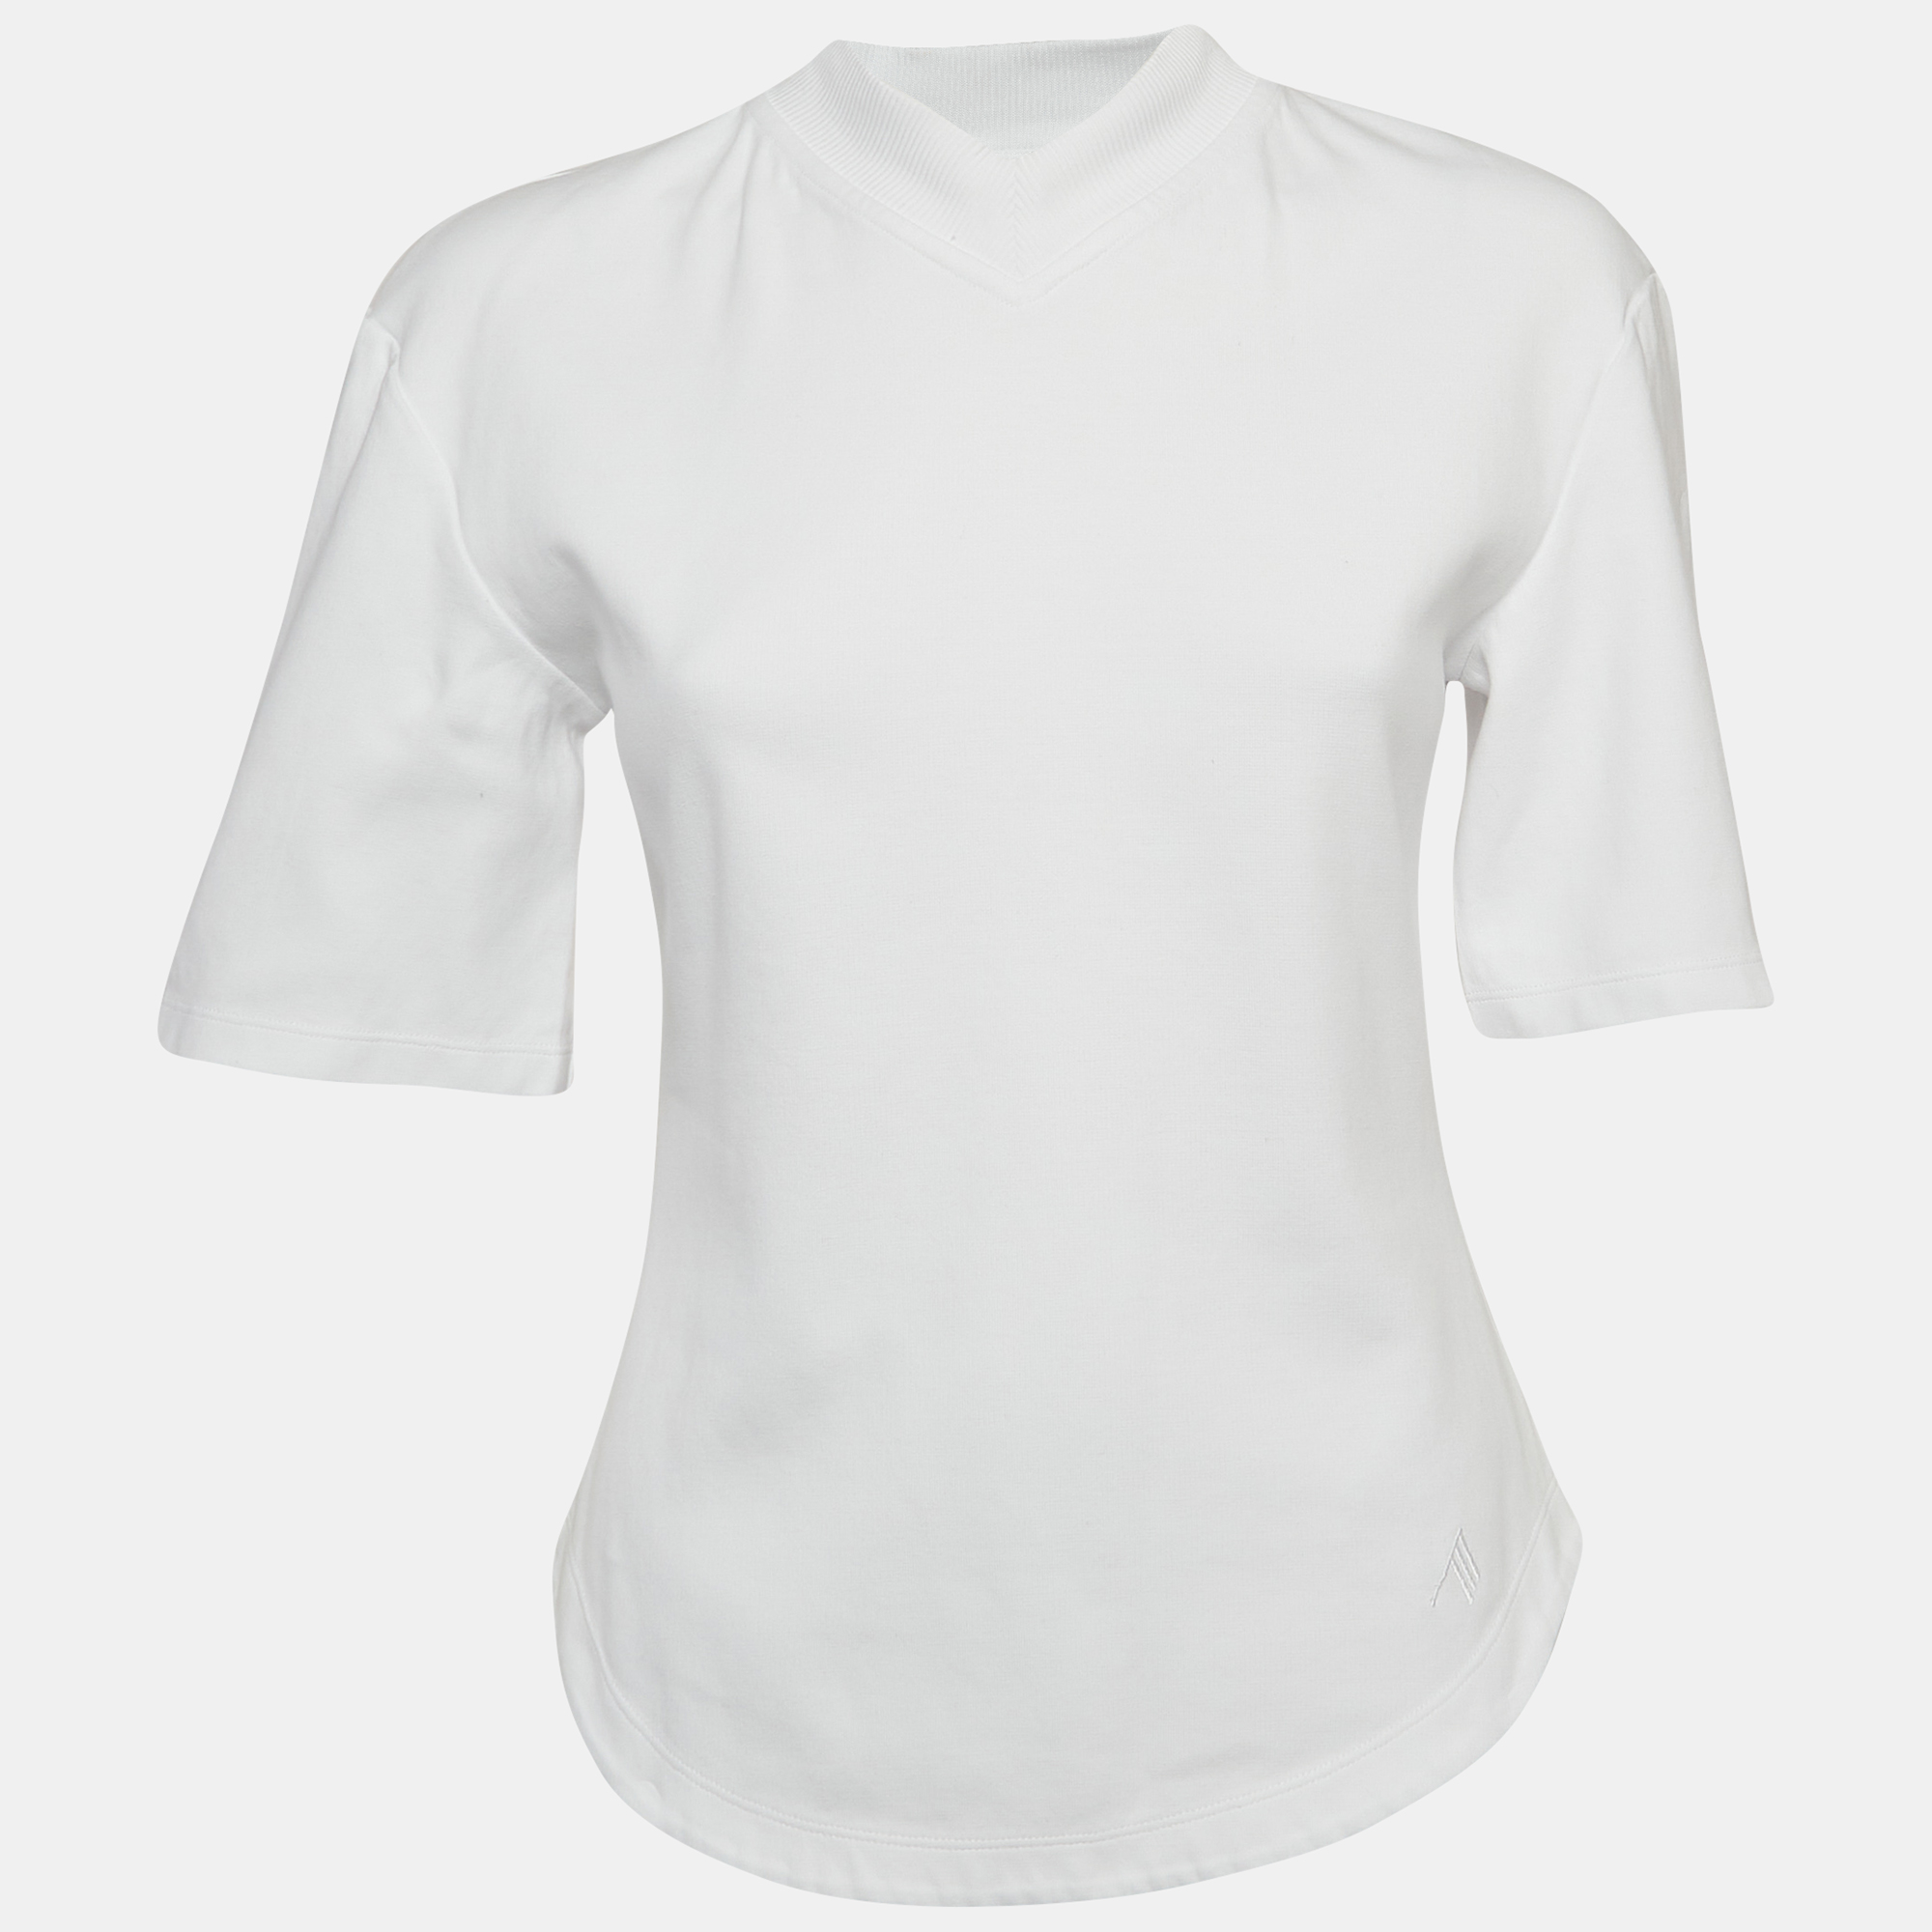 

The Attico White Cotton Knit V-Neck T-Shirt